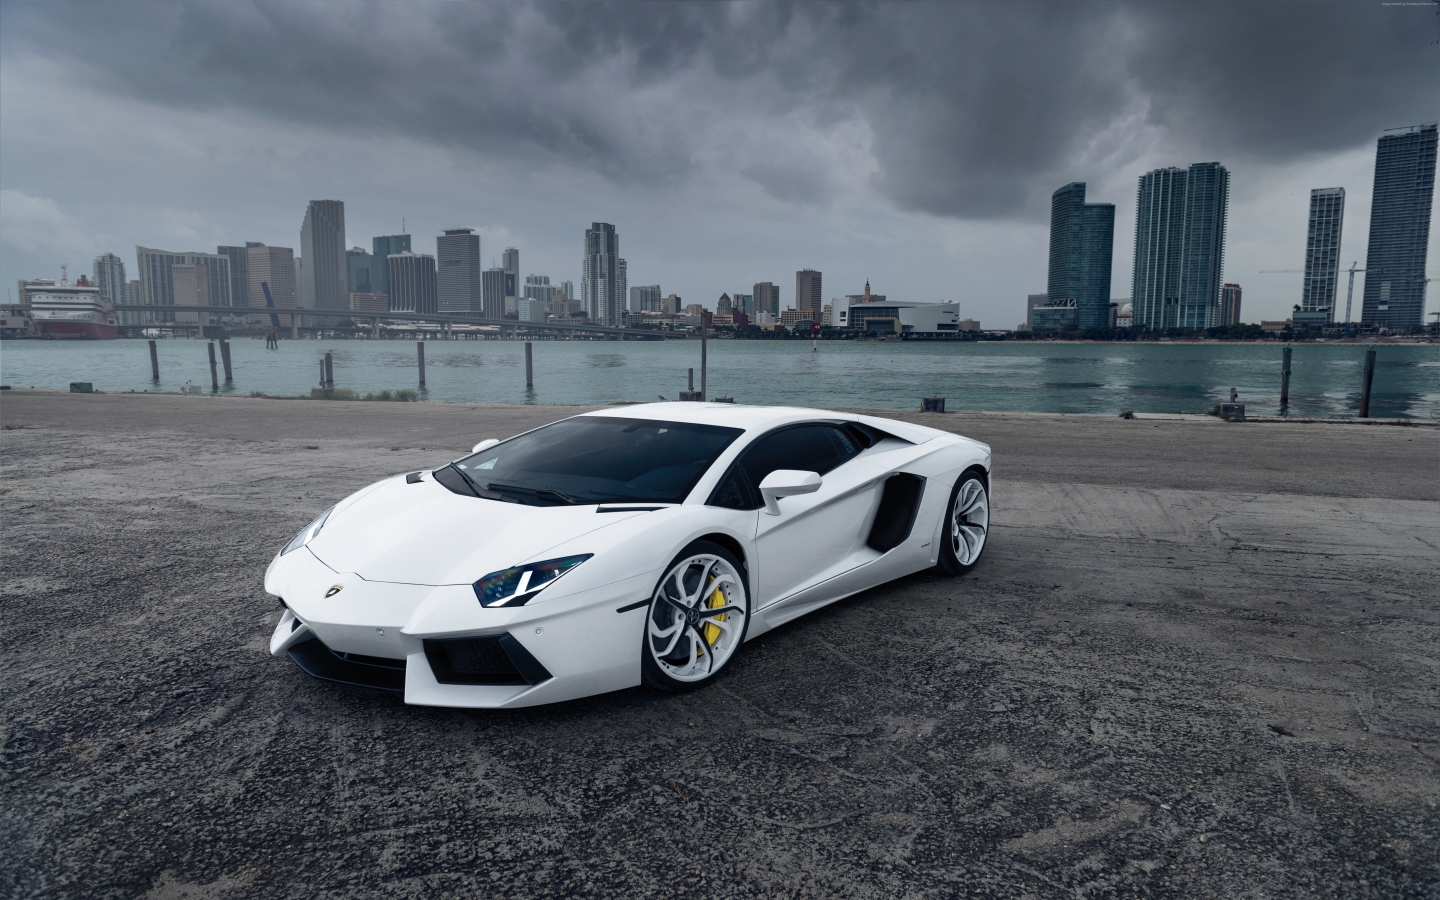 White Lamborghini Aventador for 1440 x 900 widescreen resolution